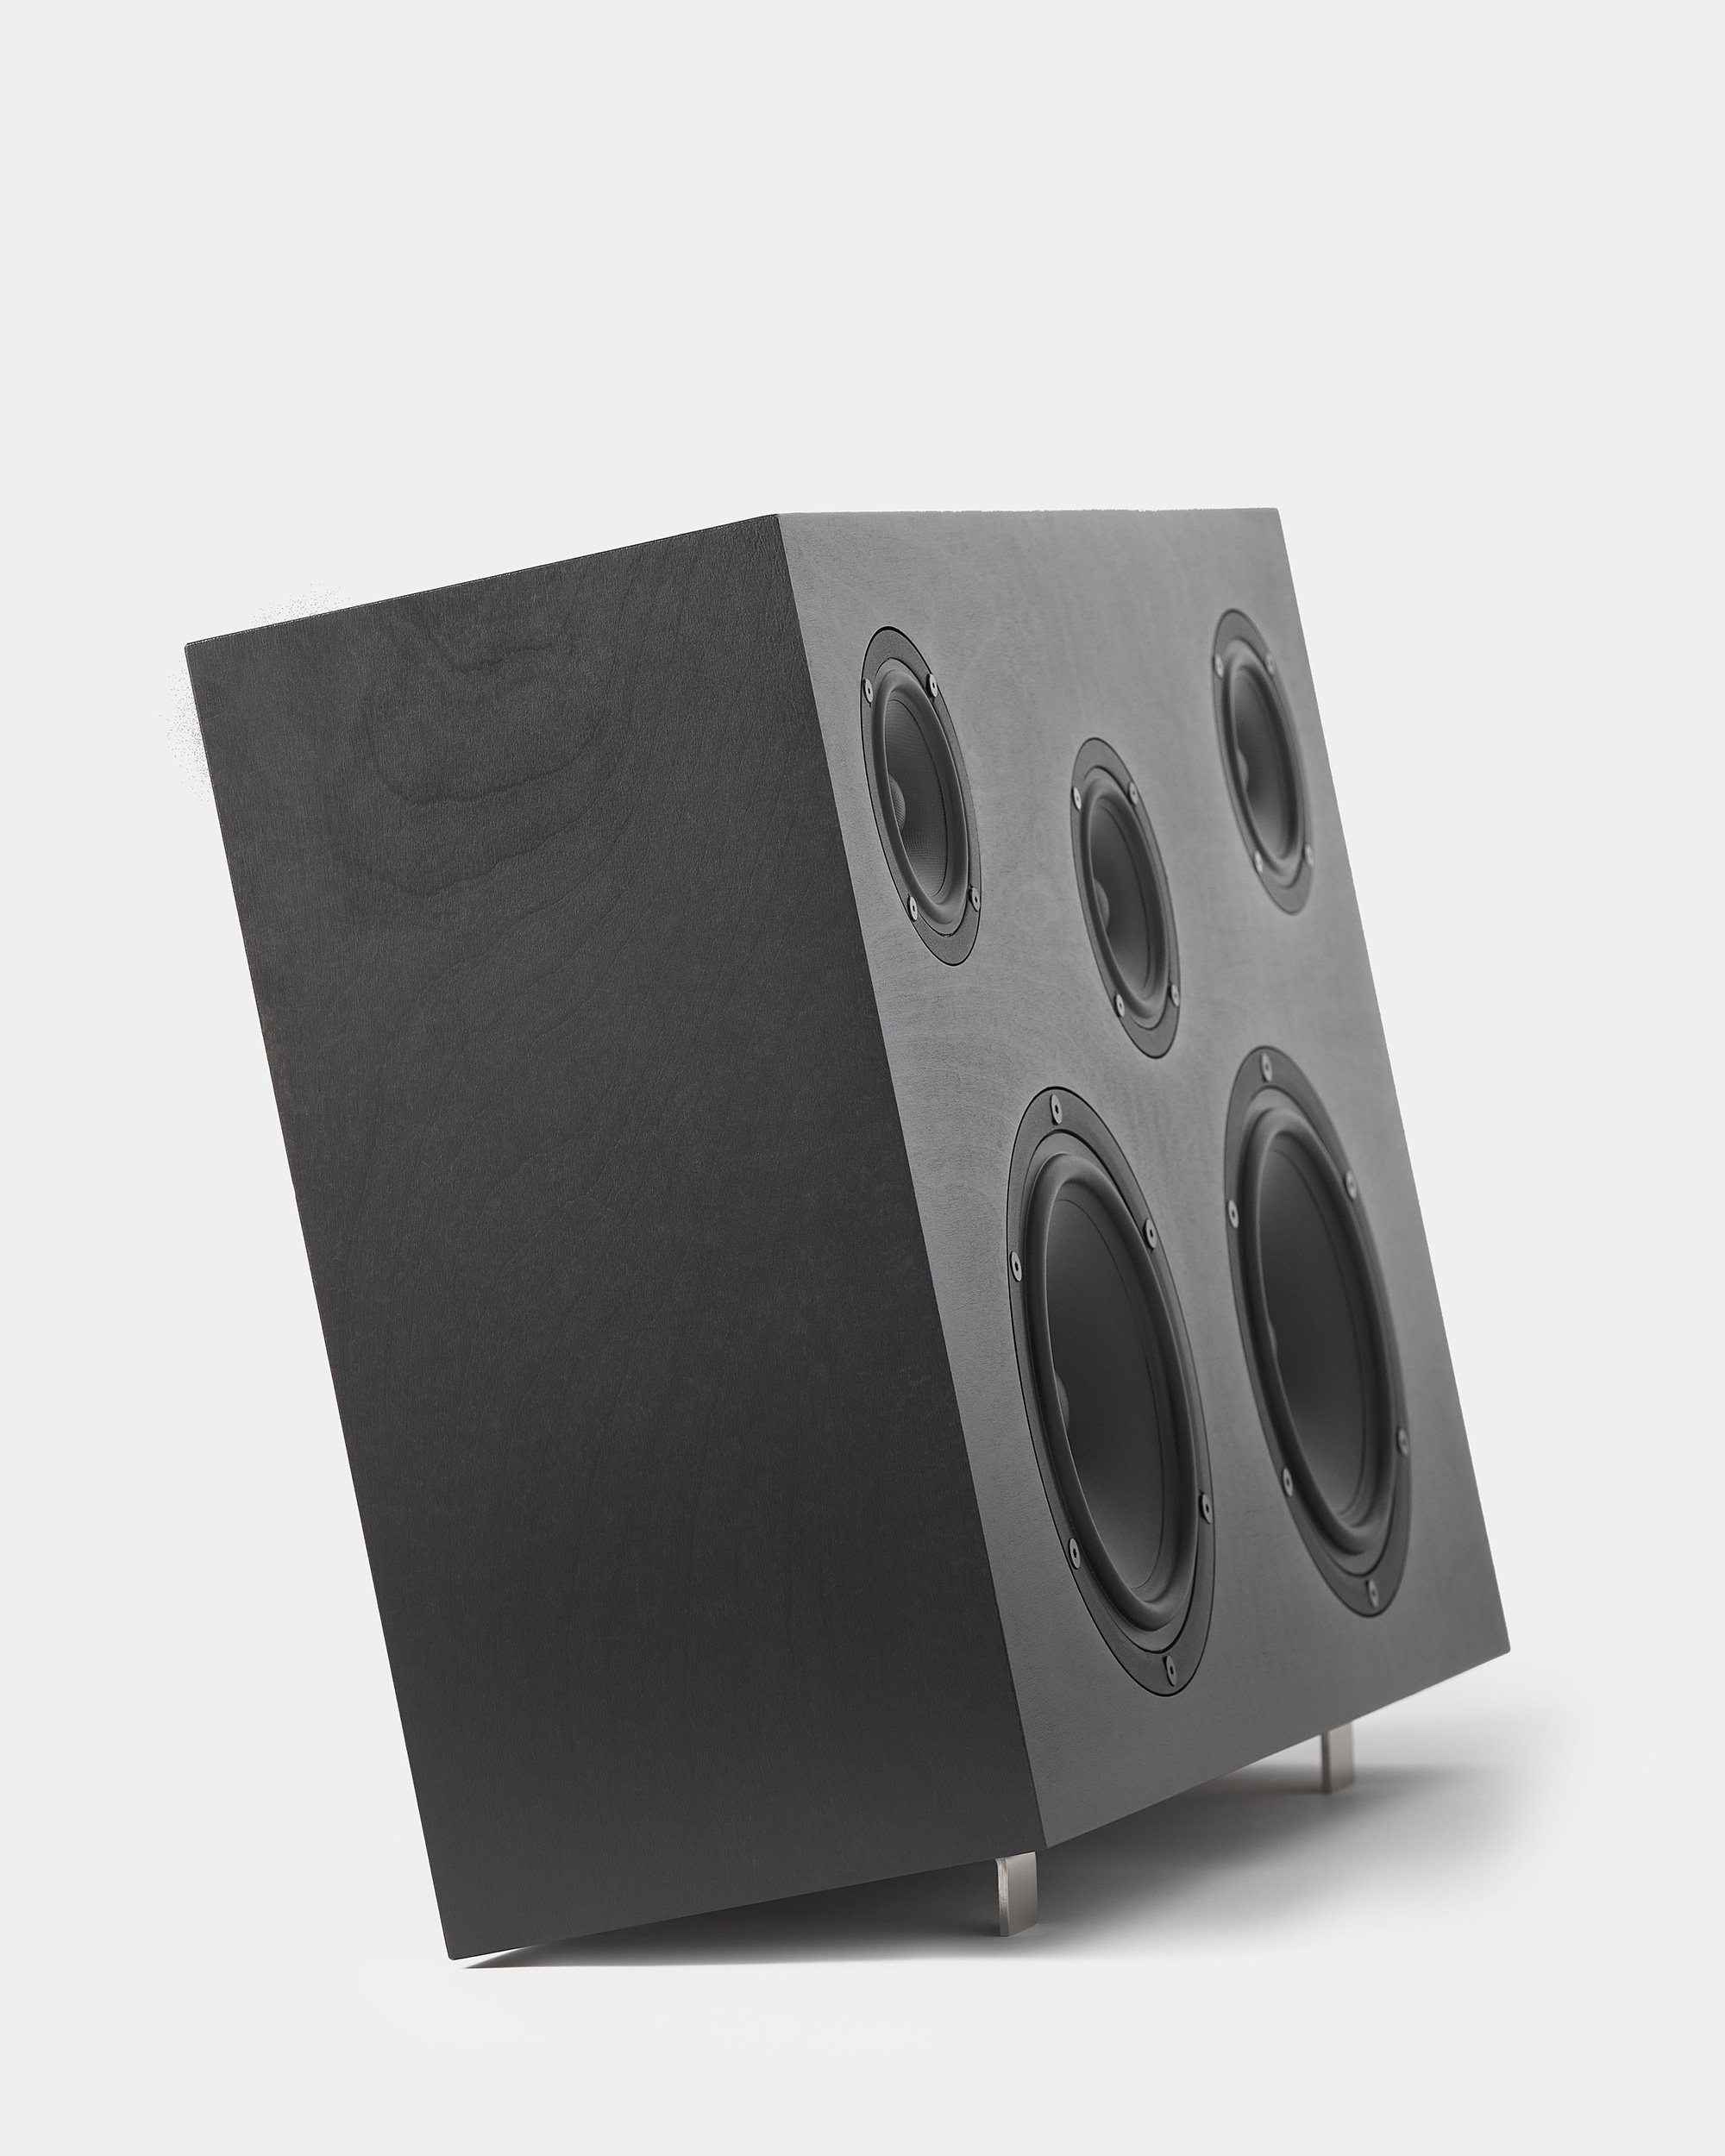 Nocs Design's Monolith Speaker